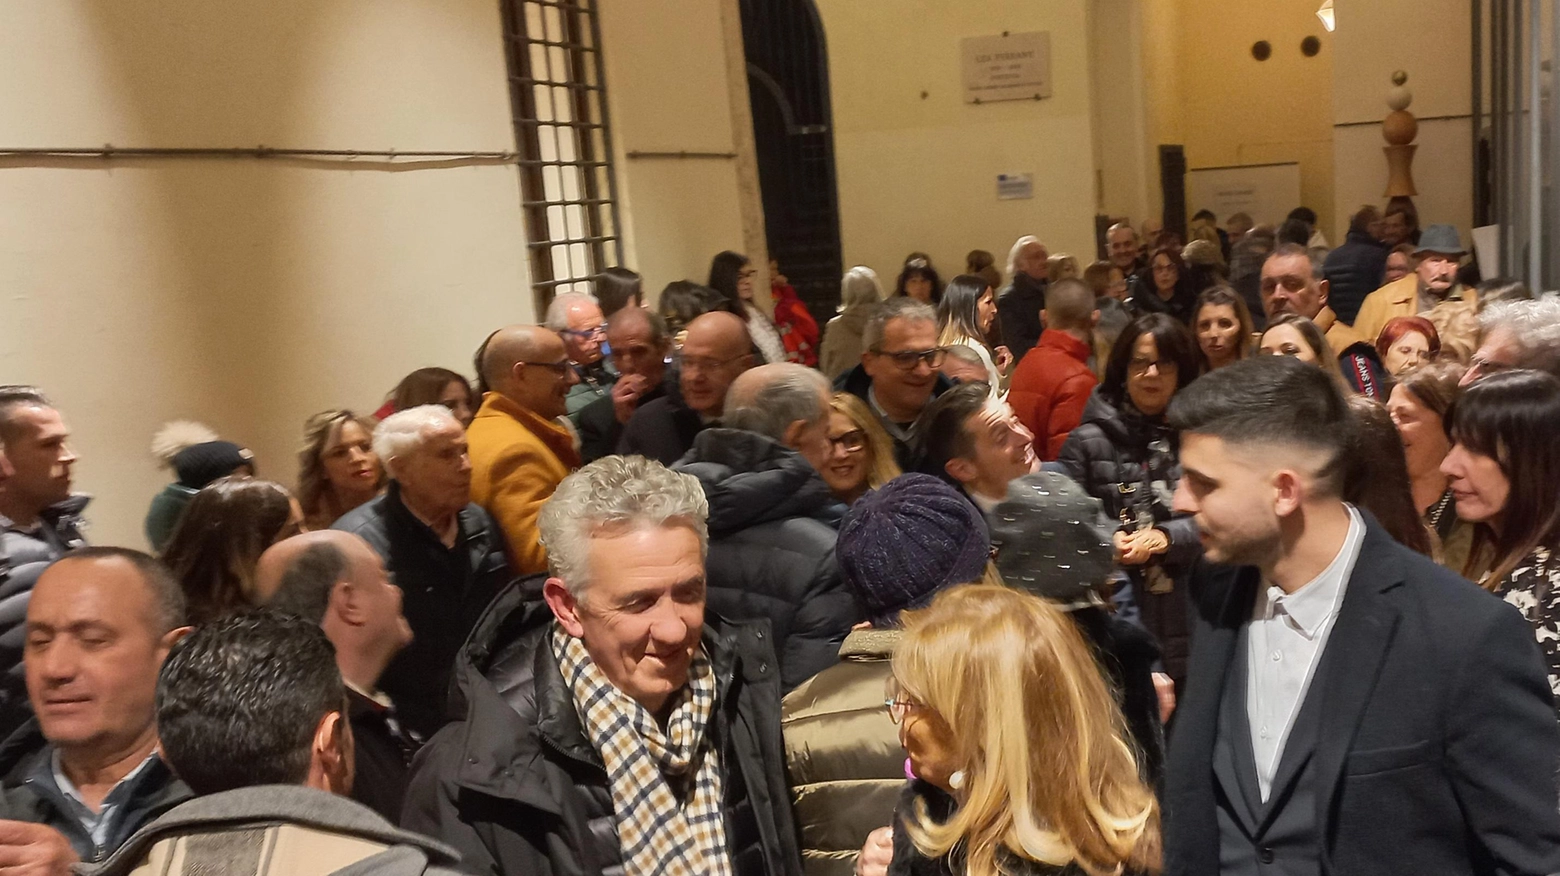 La maxi festa del sindaco  Pienone a Sant’Agostino:  "Io, un uomo del popolo"